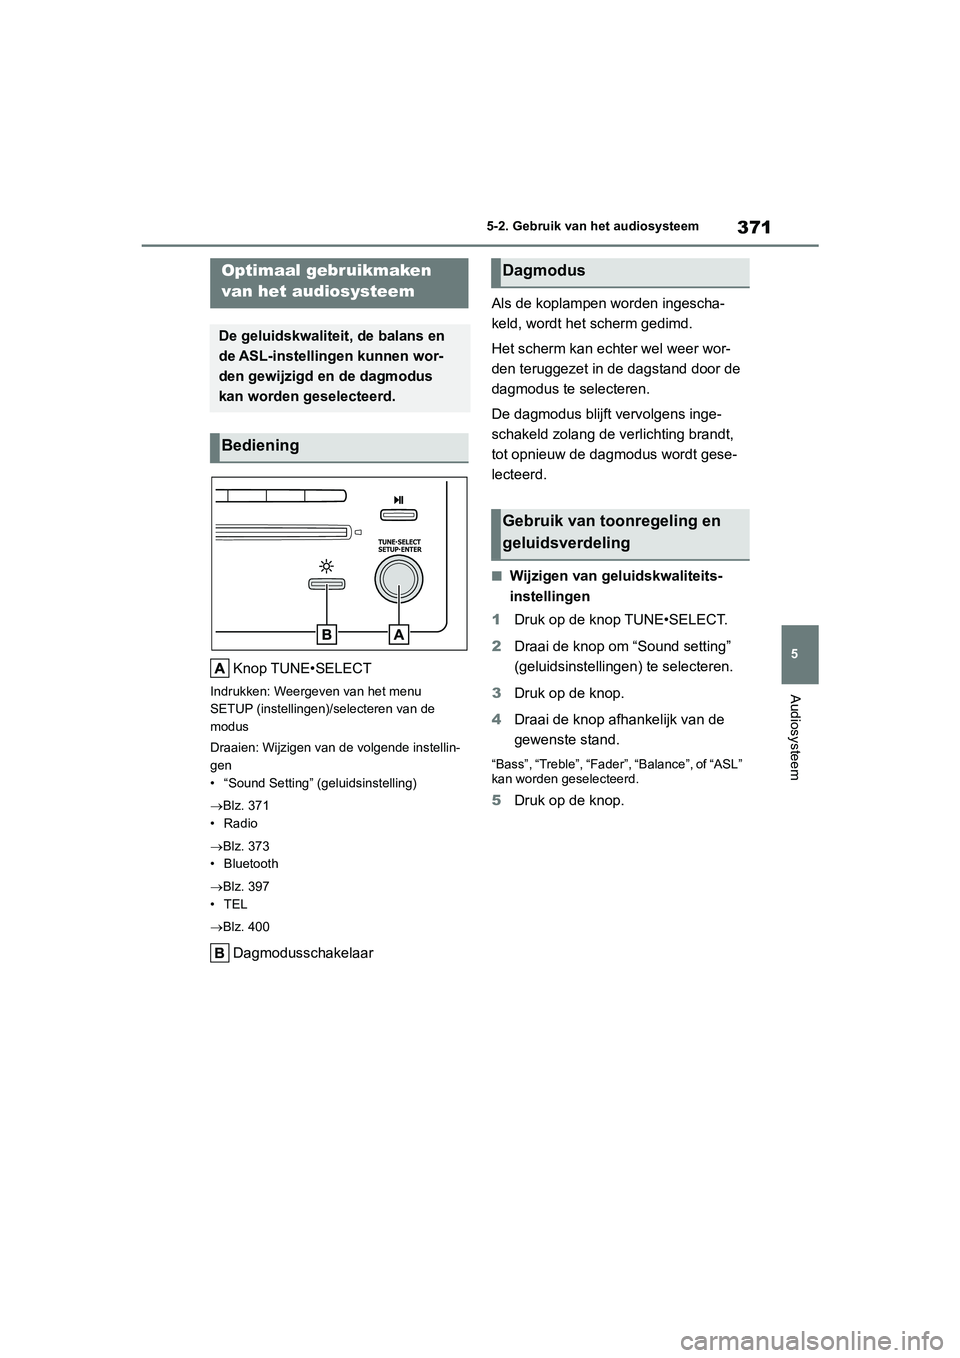 TOYOTA COROLLA HATCHBACK 2022  Instructieboekje (in Dutch) 371
5 5-2. Gebruik van het audiosysteem
Audiosysteem
5-2.Gebruik van het audiosysteem
Knop TUNE•SELECT
Indrukken: Weergeven van het menu 
SETUP (instellingen)/selecteren van de 
modus
Draaien: Wijzi